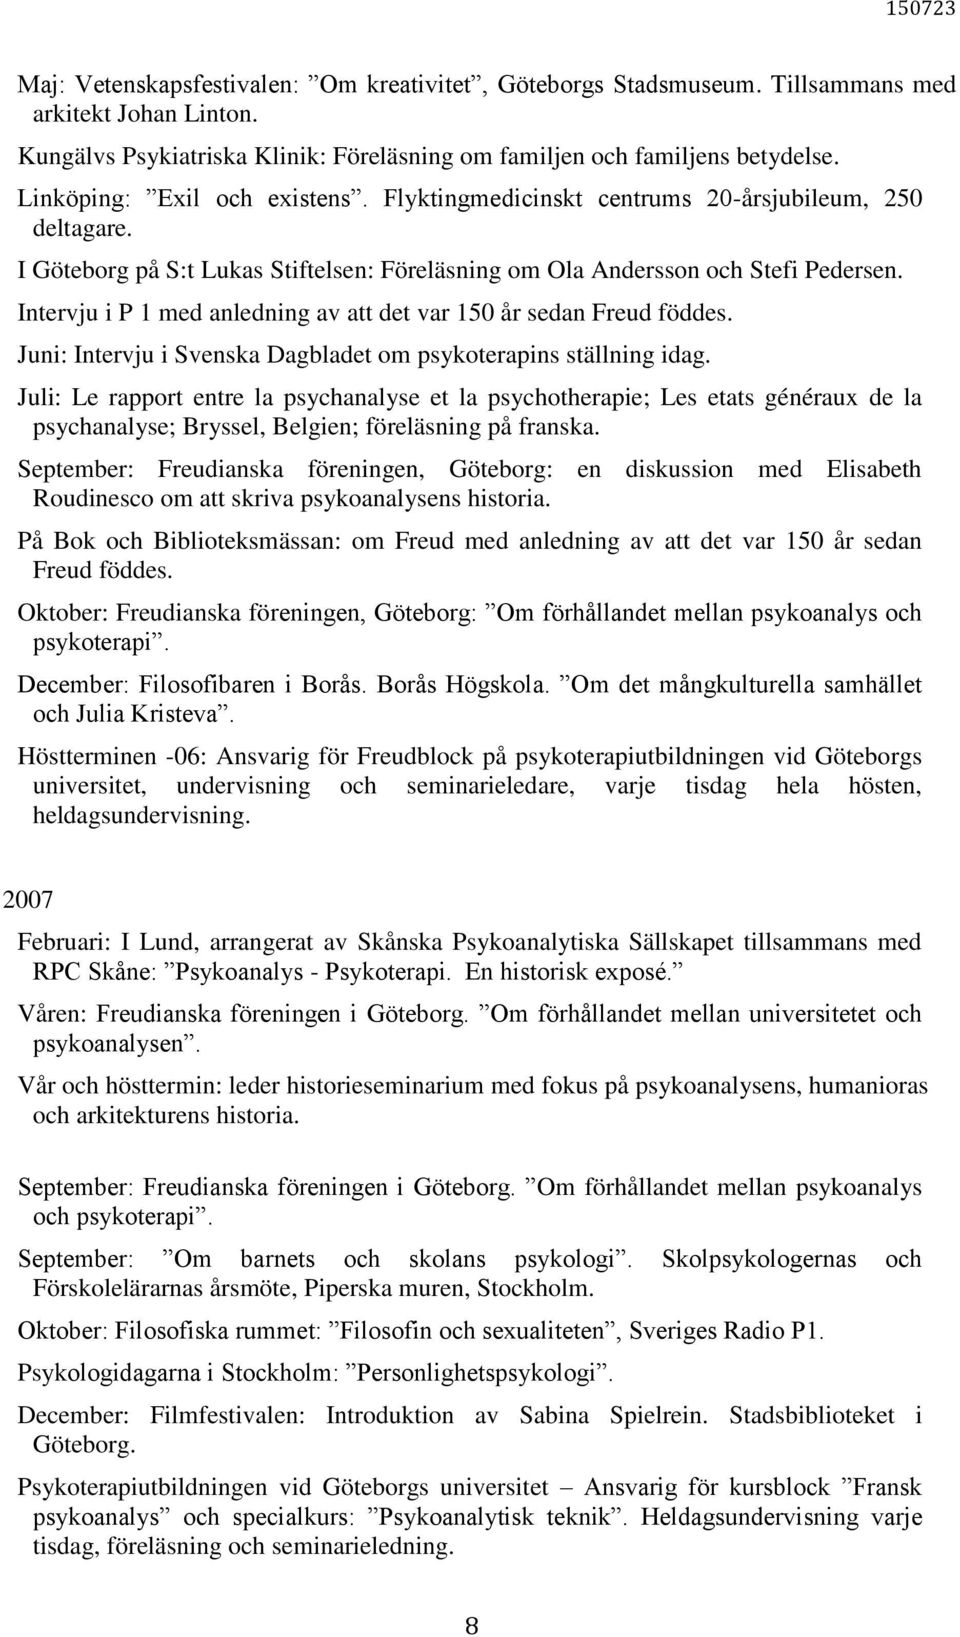 Intervju i P 1 med anledning av att det var 150 år sedan Freud föddes. Juni: Intervju i Svenska Dagbladet om psykoterapins ställning idag.